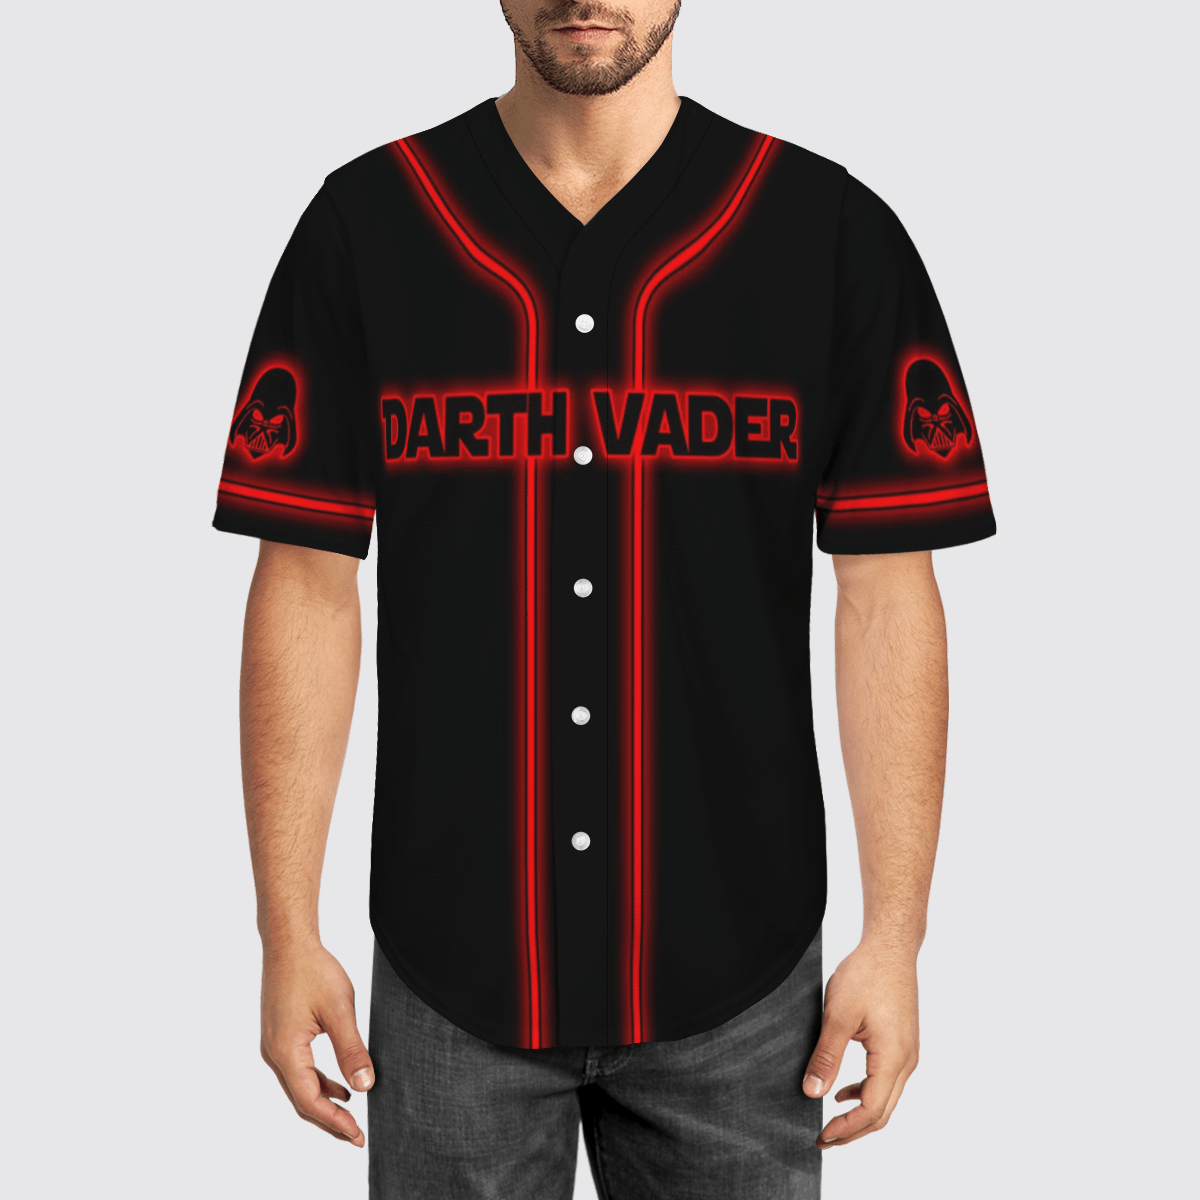 Darth Vader Star Wars baseball shirt – LIMITED EDITION